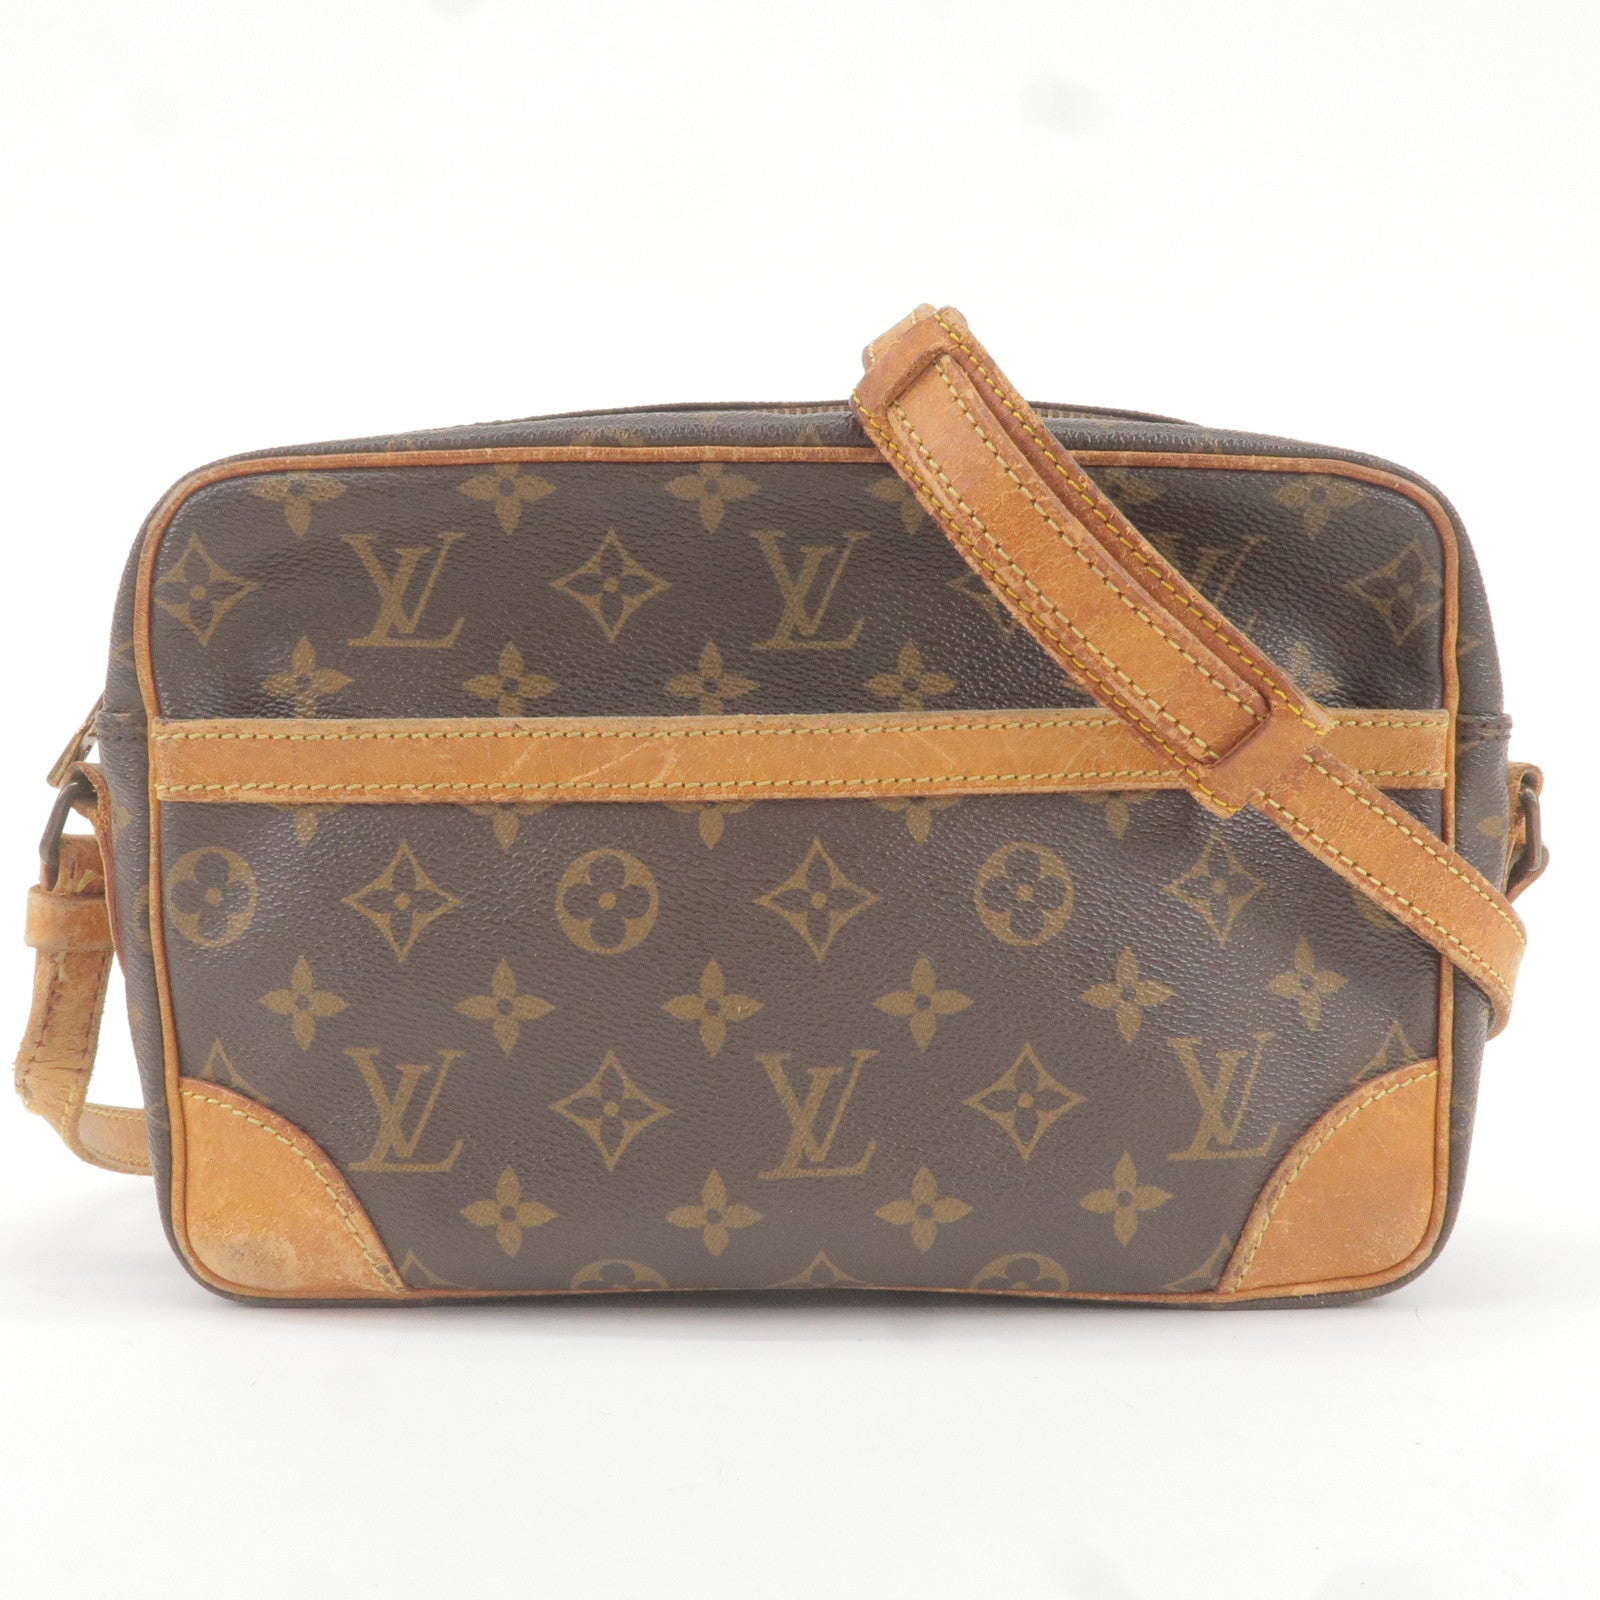 Louis Vuitton LV Trunk Reversible Leather Goods Bracelet Brown Monogram Canvas. Size 19